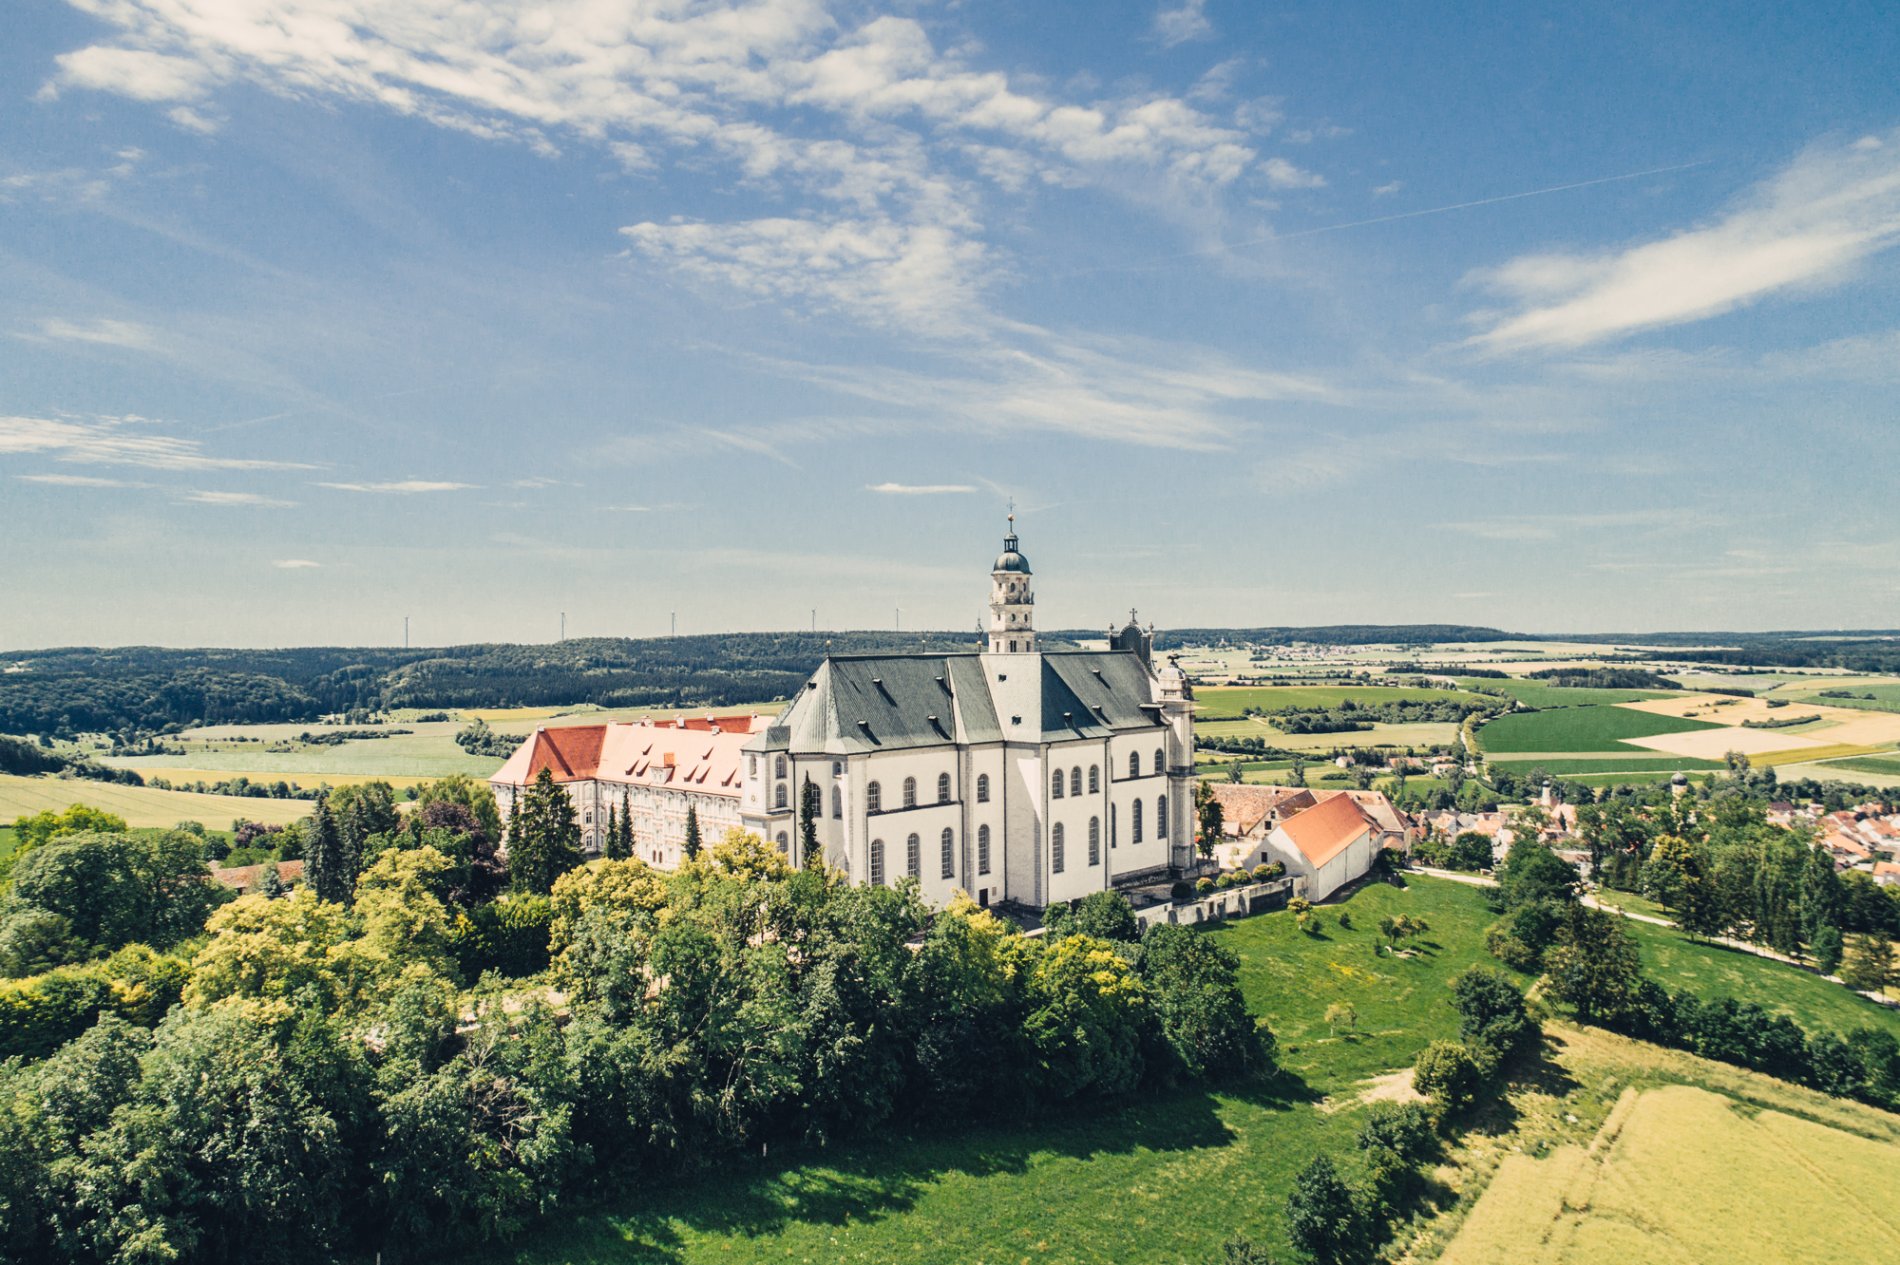 Benedictine Abbey Neresheim